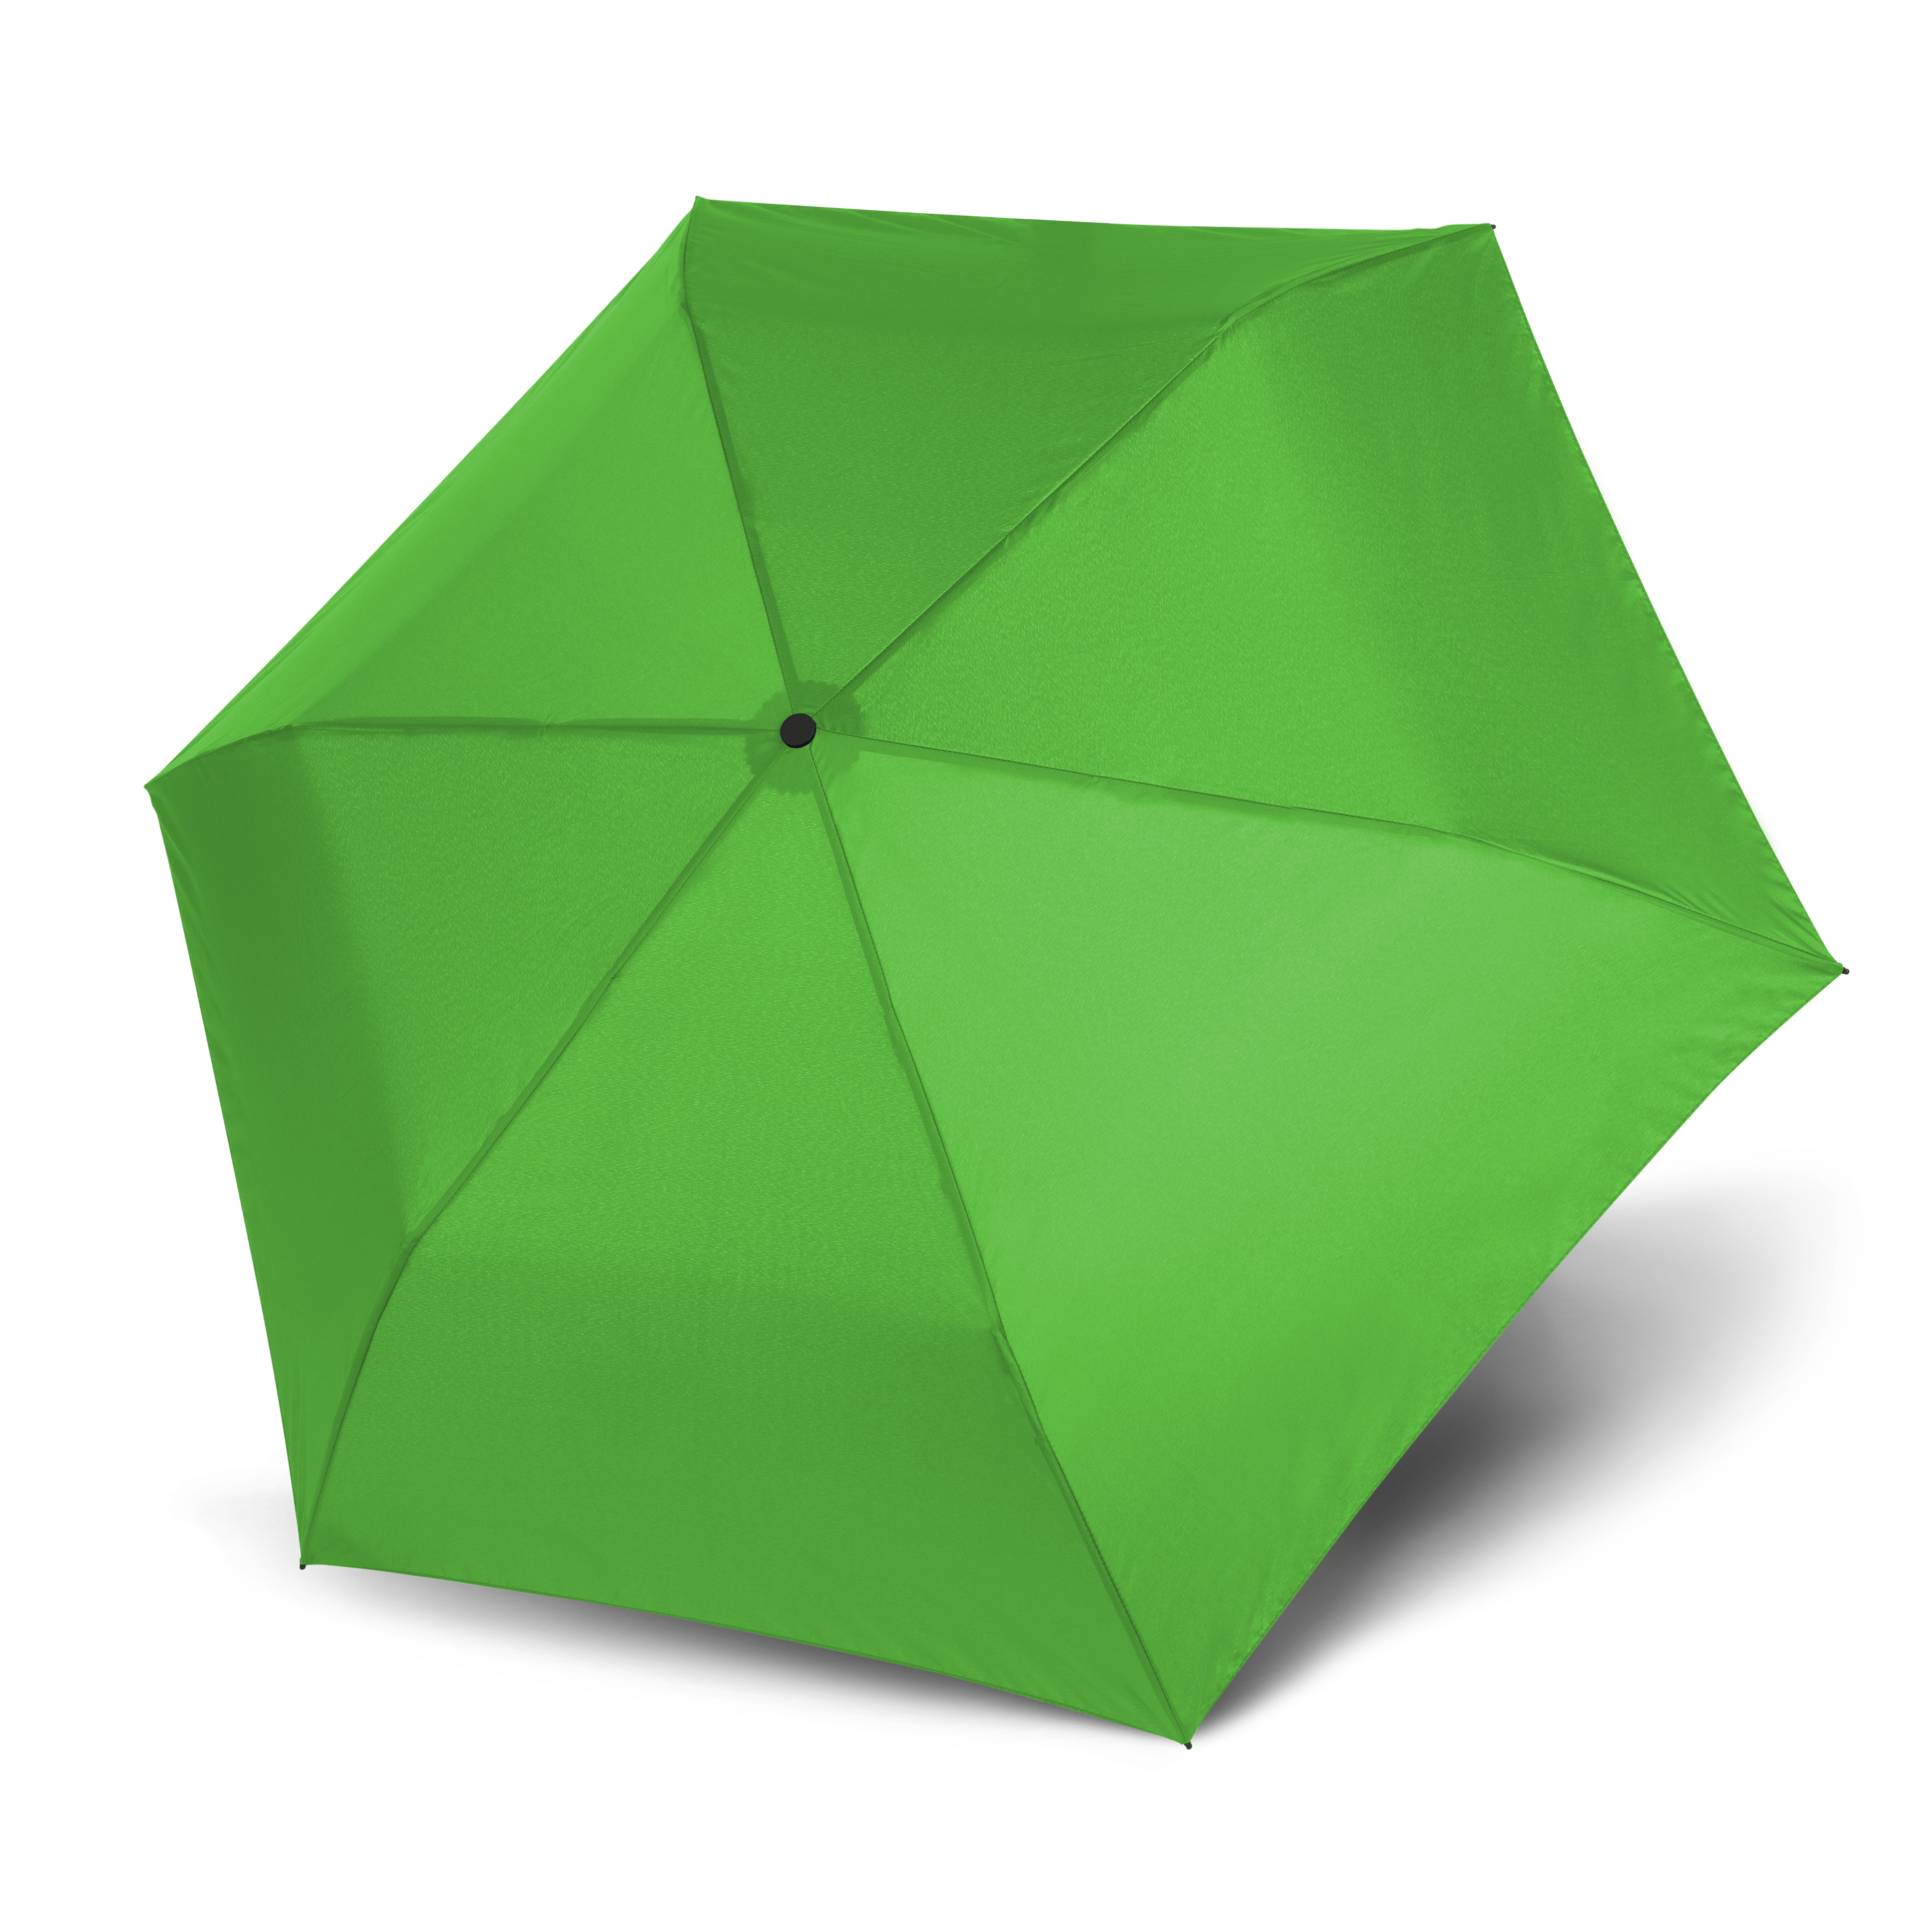 Doppler Regenschirm sehr Farbe:Grün Light Zero99 99g, Ultra leichter Taschenschirm